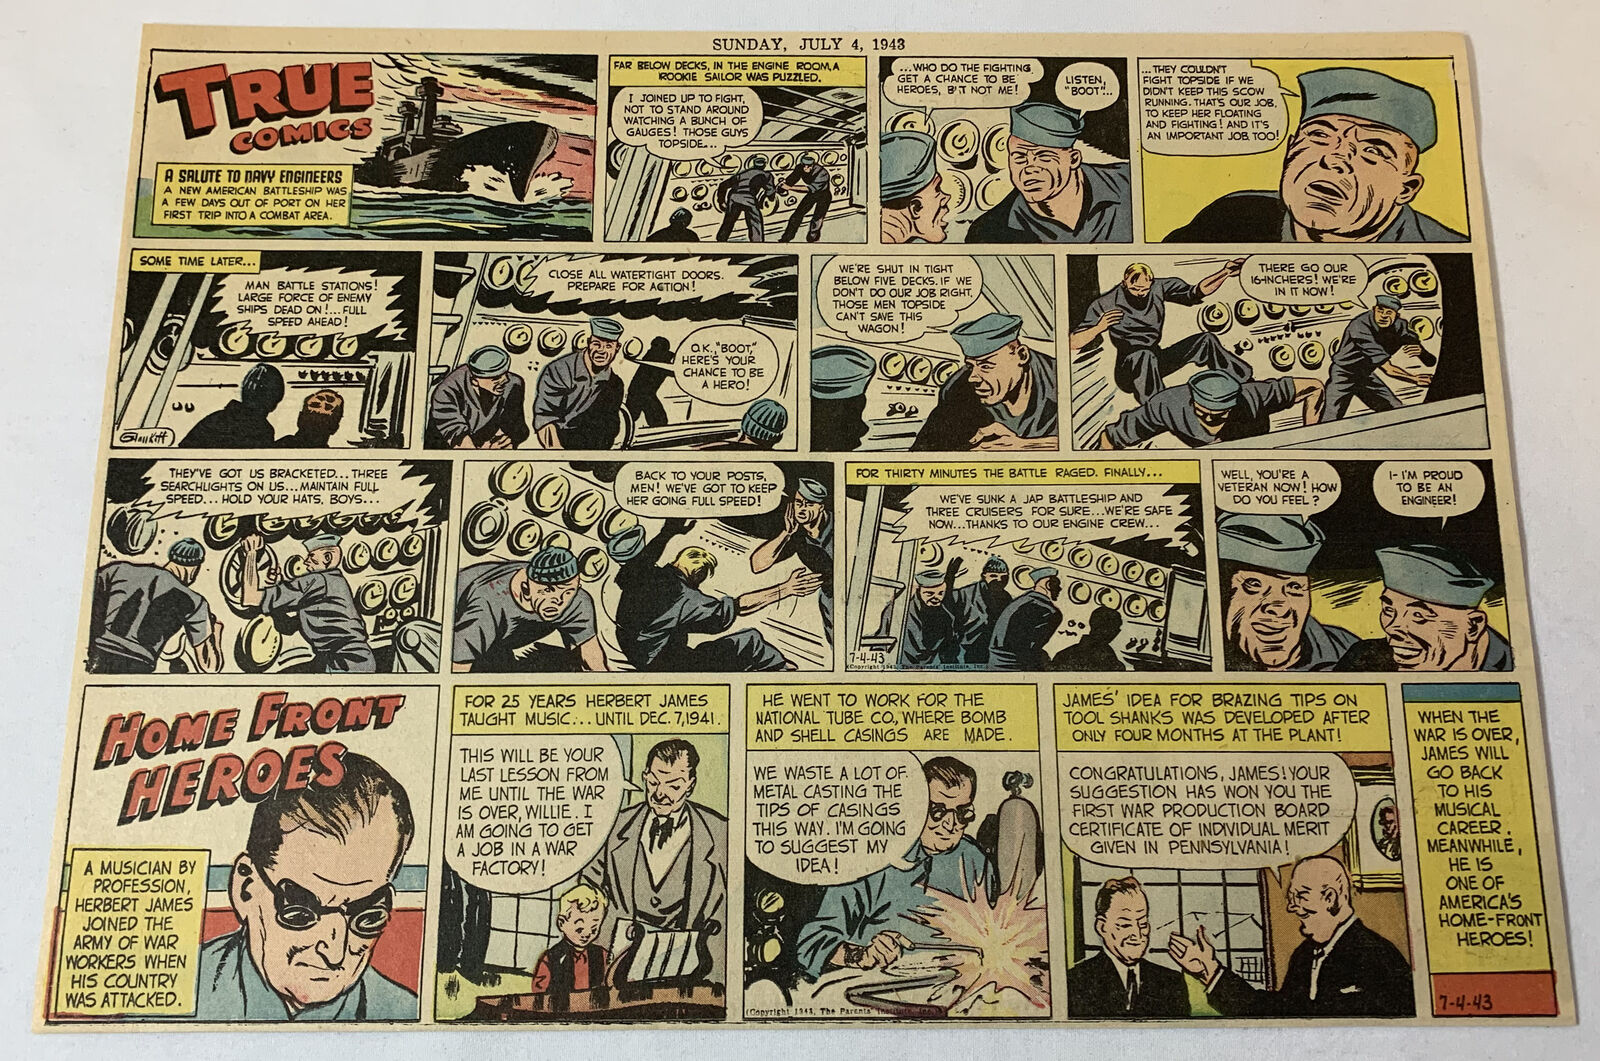 1943 True Comics WWII cartoon ~ SALUTE TO NAVY ENGINEERS plus HERBERT JAMES